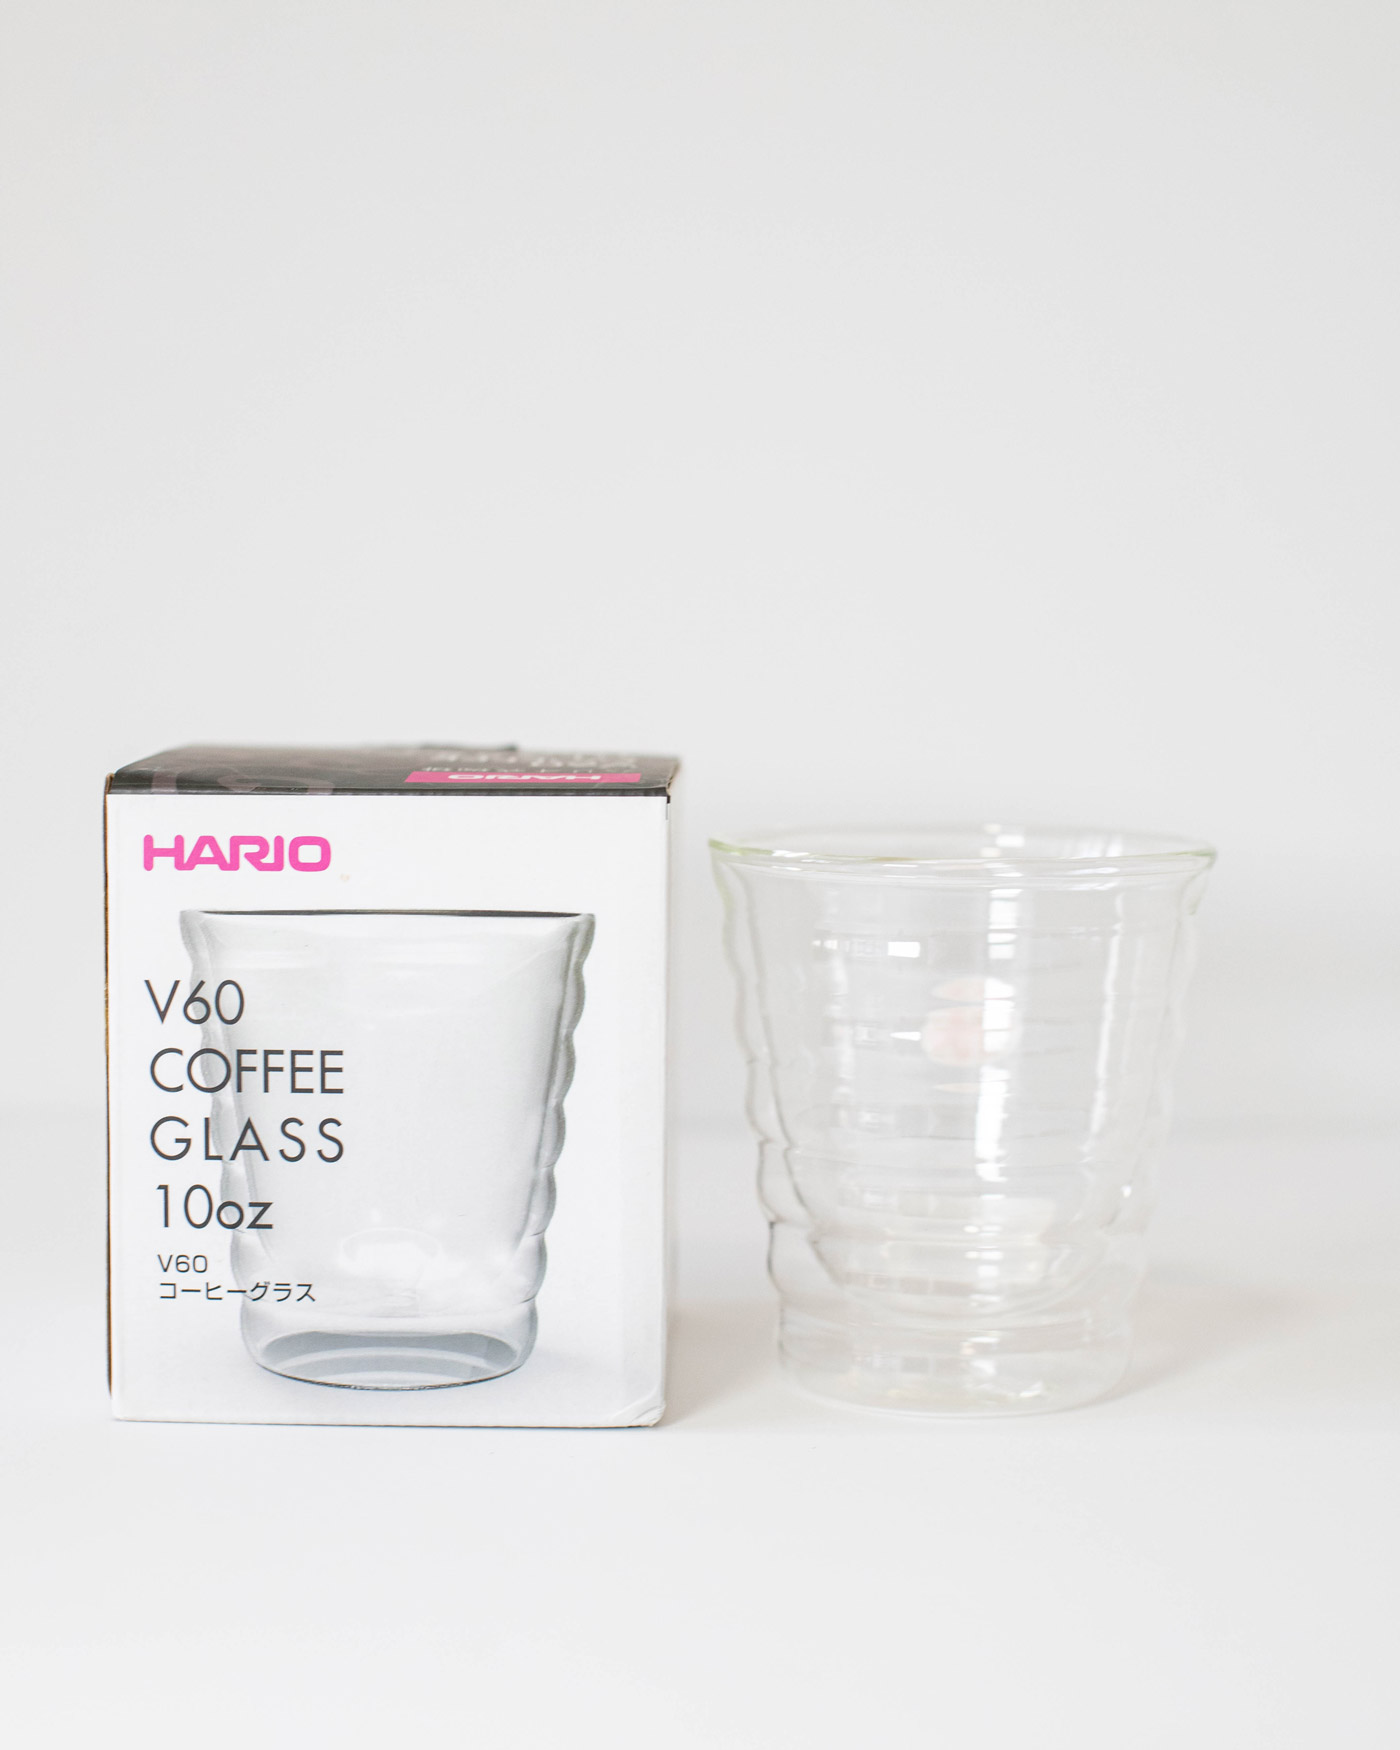 https://cafedonjuan.com/wp-content/uploads/2021/09/Hario-V60-Coffee-Glass.jpg